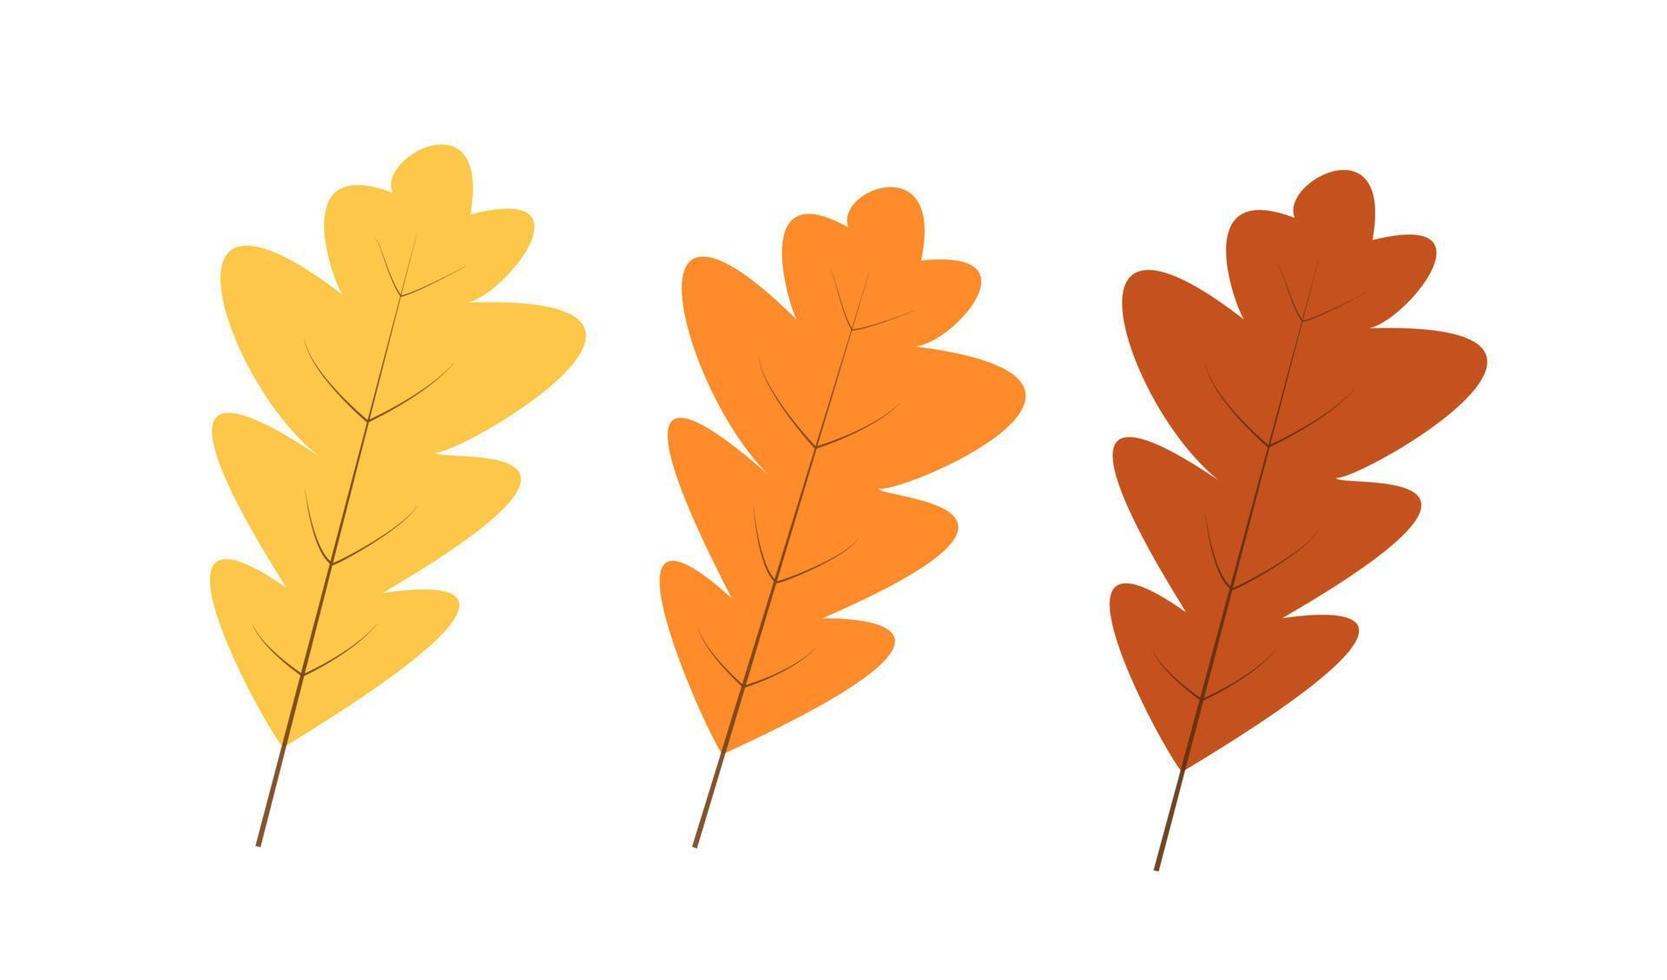 hojas de roble amarillas y marrones de otoño aisladas en blanco, ilustración vectorial de la caída de las hojas de otoño vector